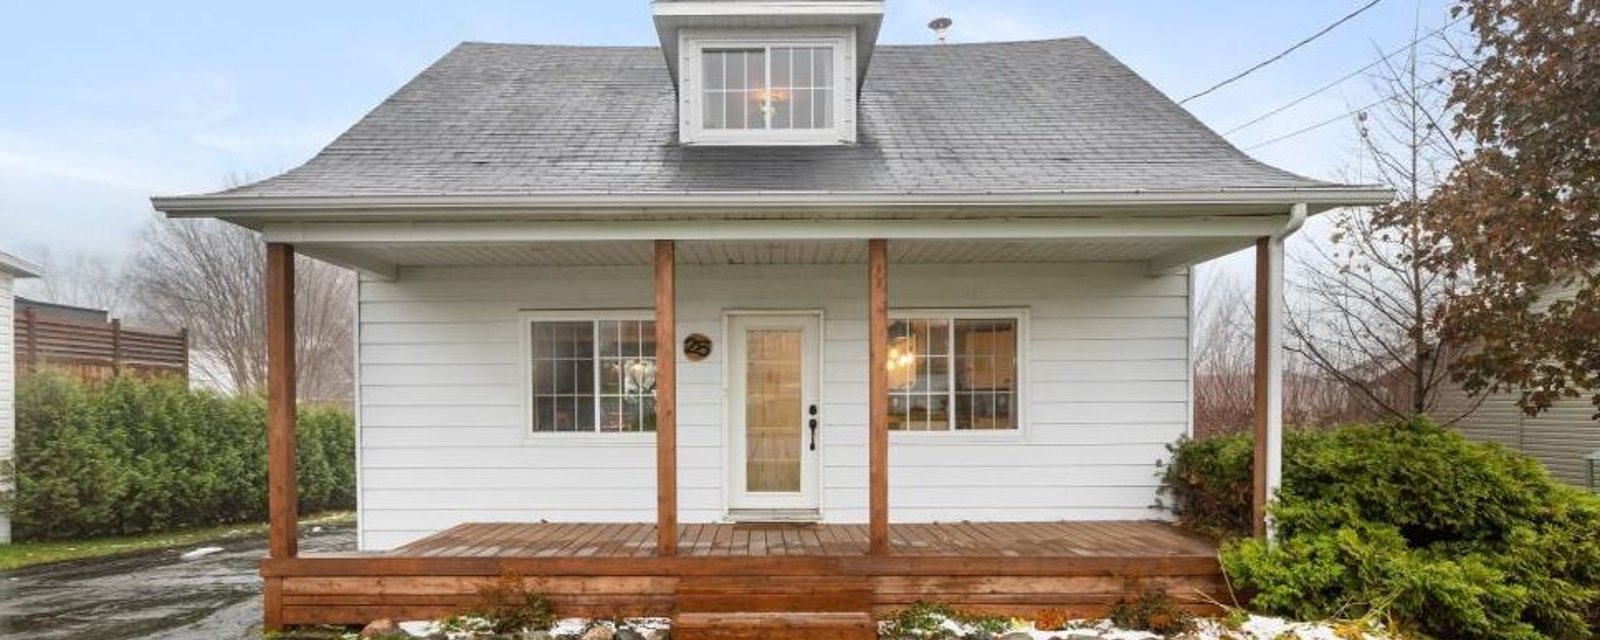 Adorable maison rénovée à 224 900$ conjuguant cachet d'antan et raffinement moderne